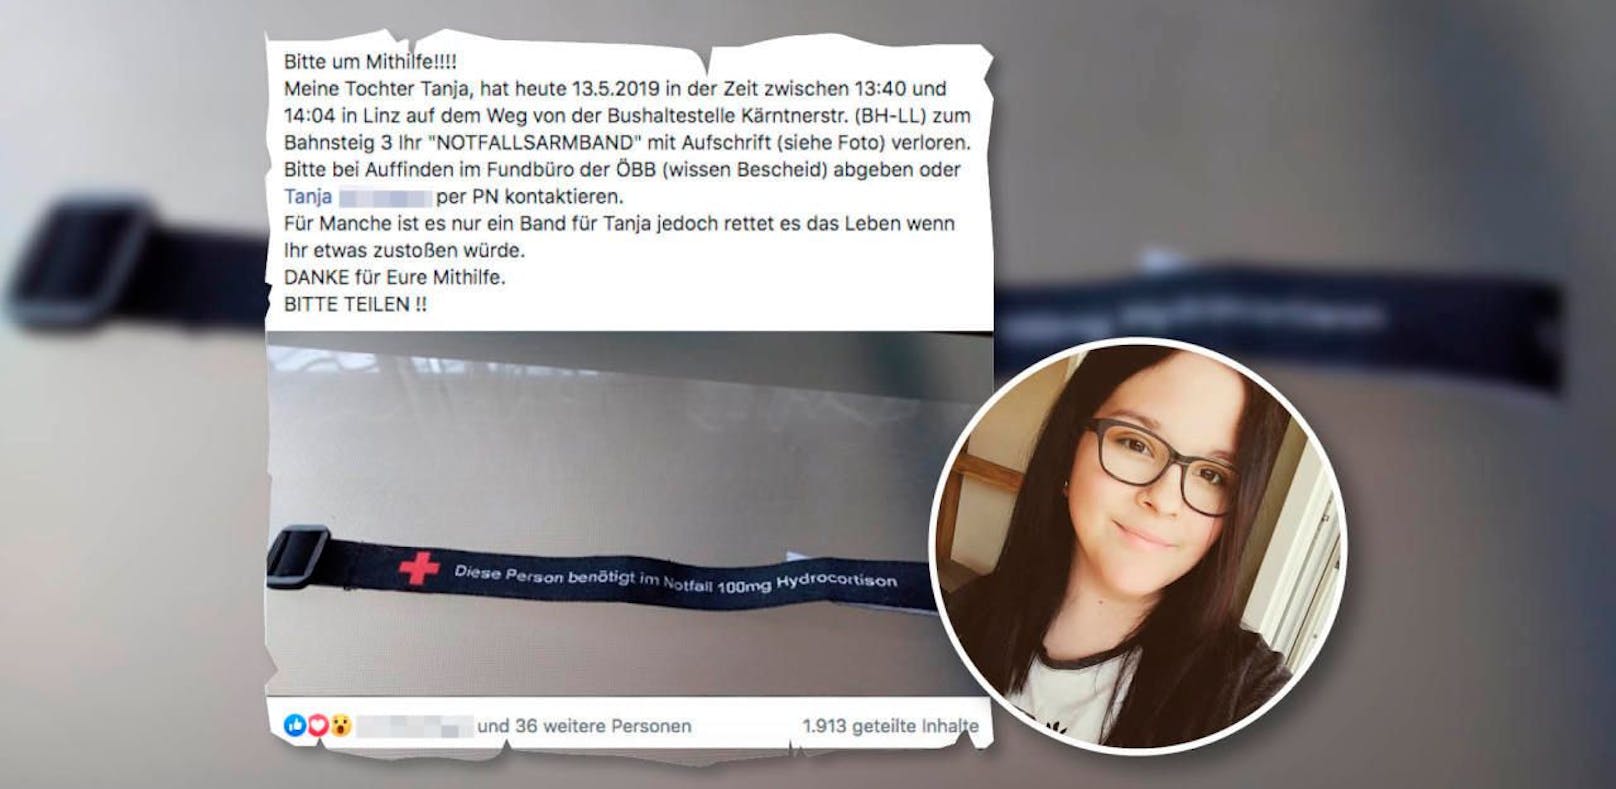 Die Mutter der jungen Traunerin startete auf Facebook einen Suchaufruf nach dem verlorenen Notfallarmband.